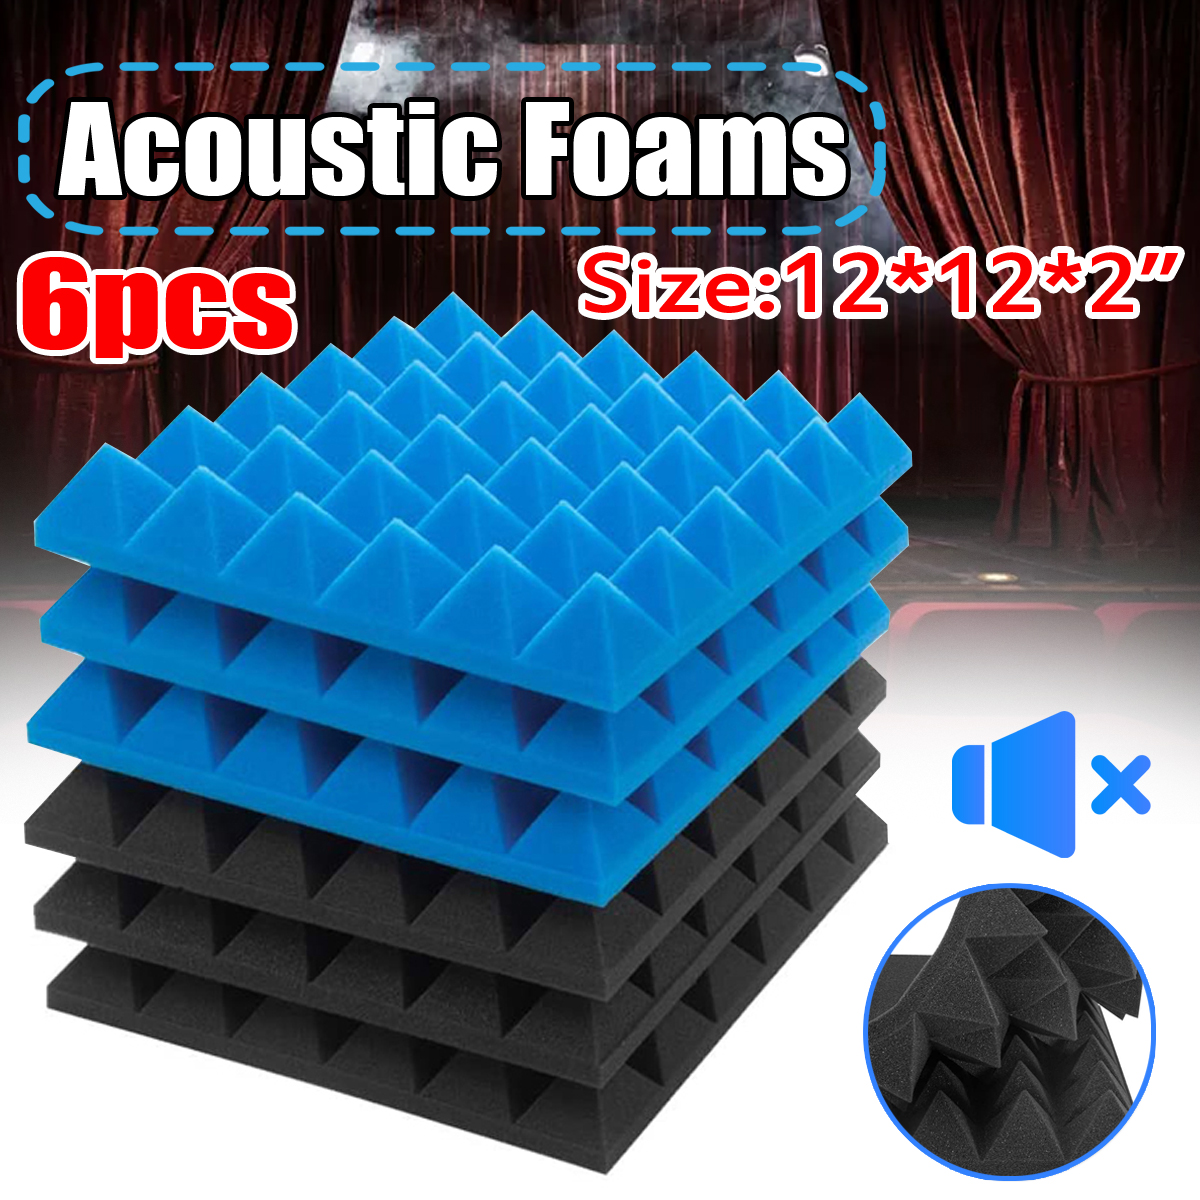 6Pcs-Acoustic-Foams-Studio-Soundproofing-Wedges-Tiles-Black--Blue-12x12x2inch-1749892-1